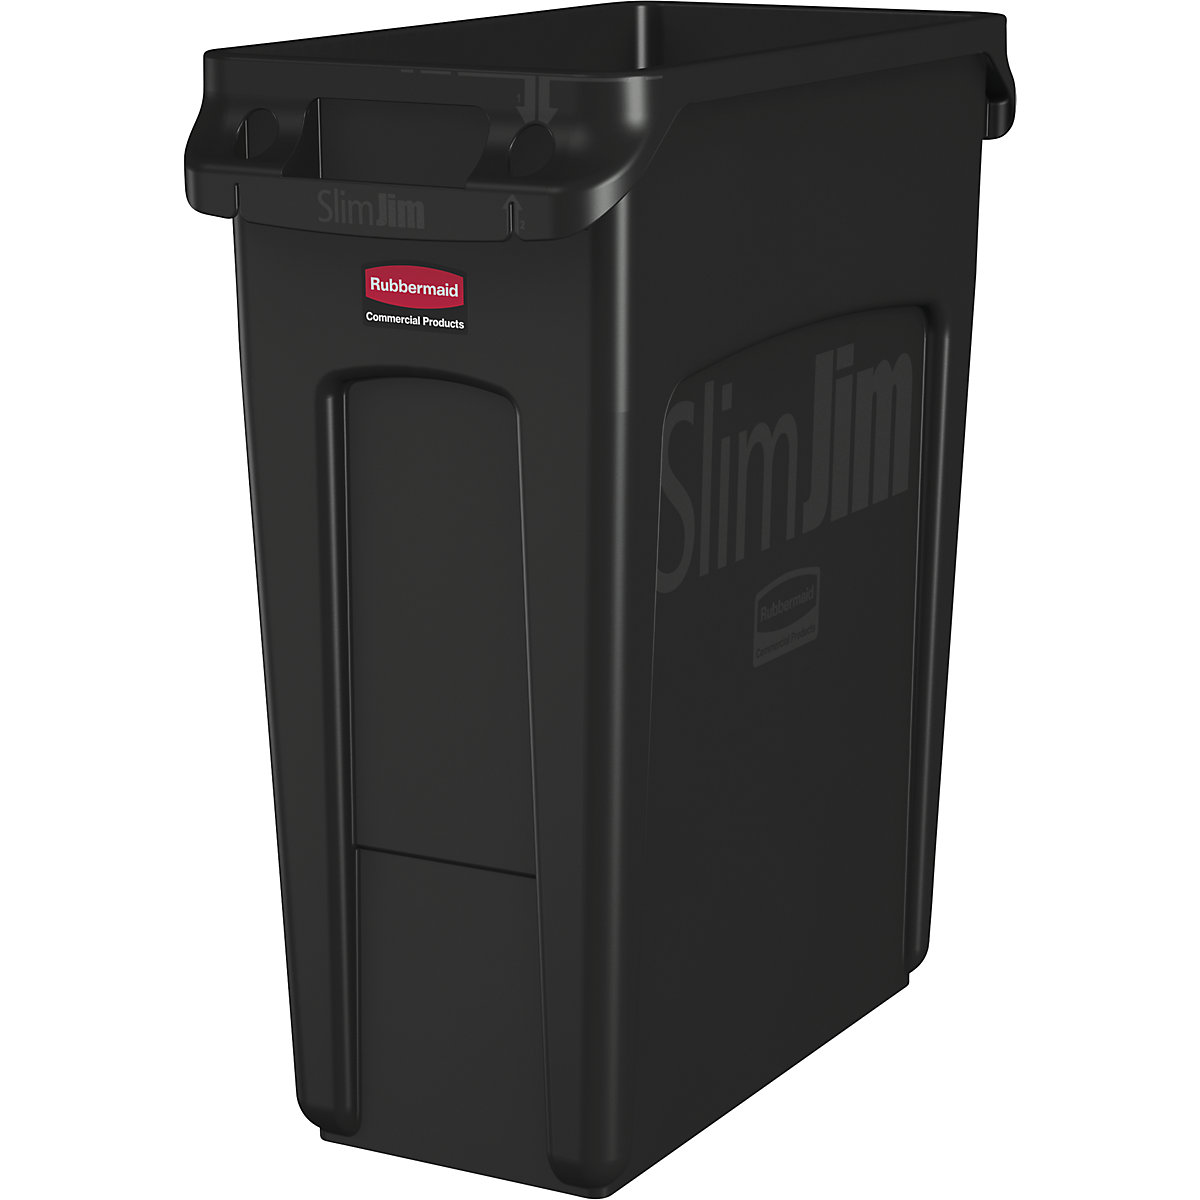 Verzamelaar voor kringloopmateriaal/afvalbak SLIM JIM® – Rubbermaid, volume 60 l, met ventilatiekanalen, zwart, vanaf 10 stuks-10